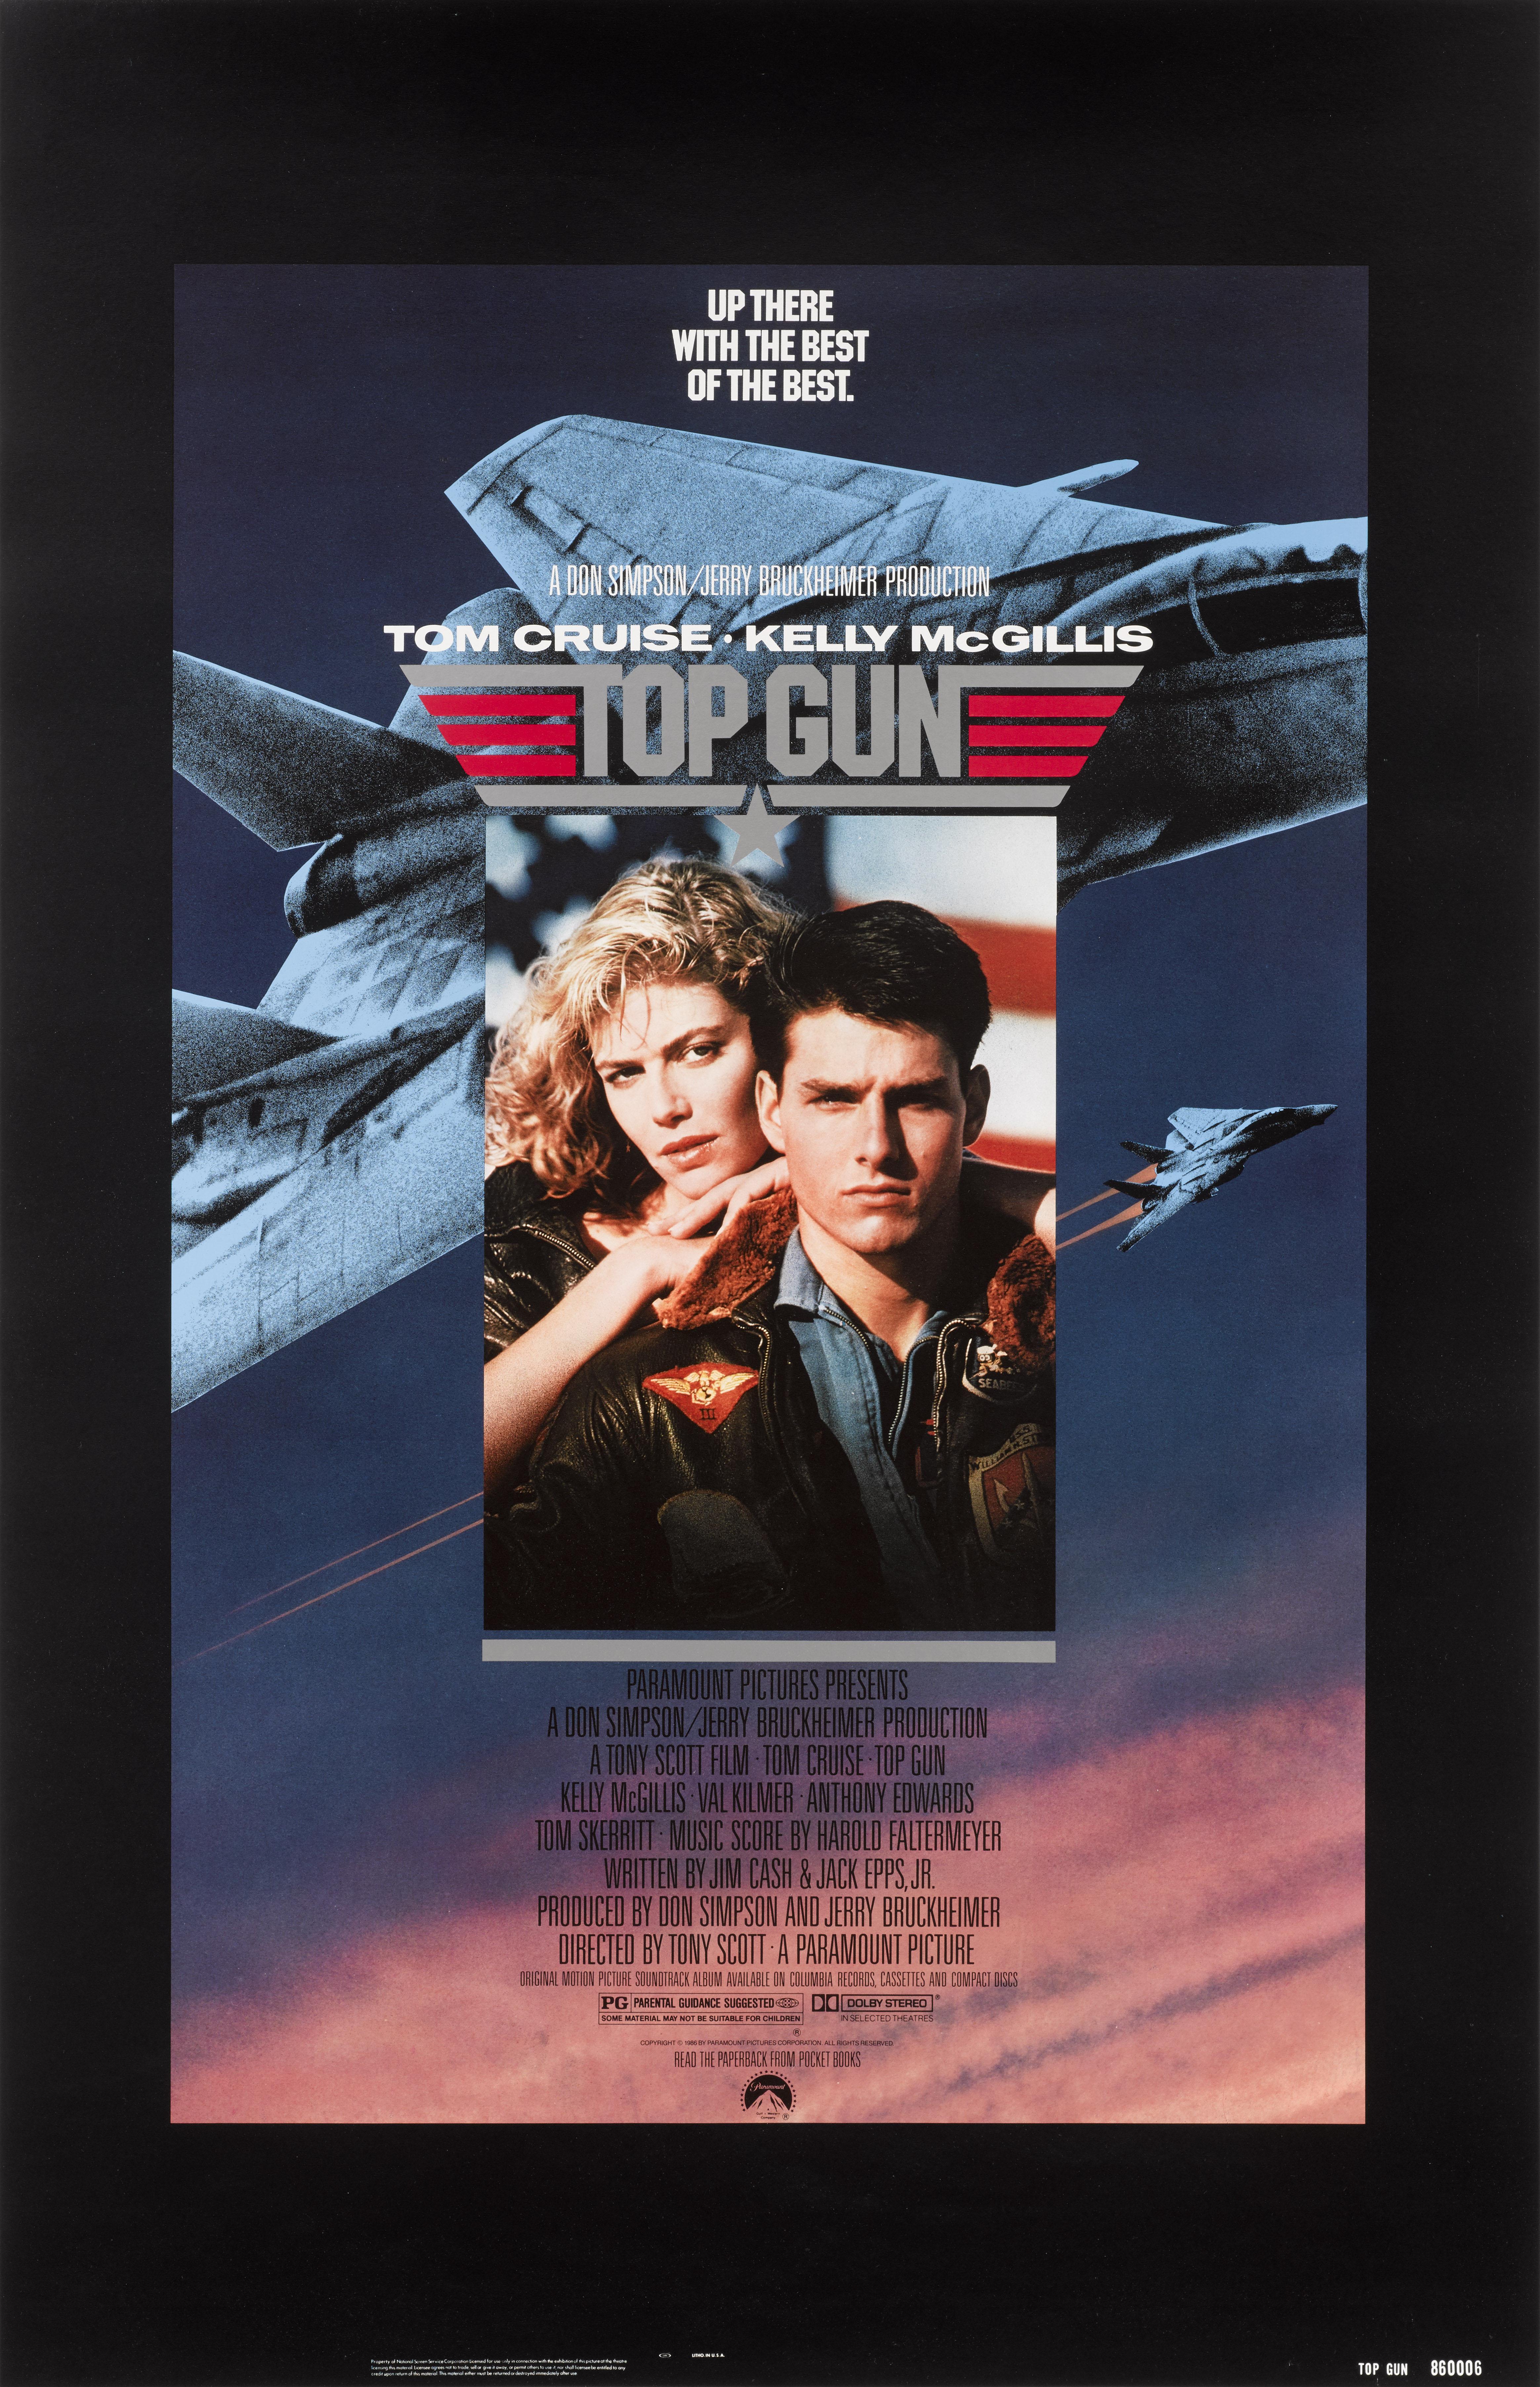 Original US-Filmplakat für den Blockbuster Top Gun von 1986 mit Tom Cruise, Kelly McGillis, Tim Robbins, Val Kilmer und Michael Ironside in den Hauptrollen.
Die Regie bei diesem Film führte Tony Scott.
Dieses Plakat wurde gerollt und gefaltet